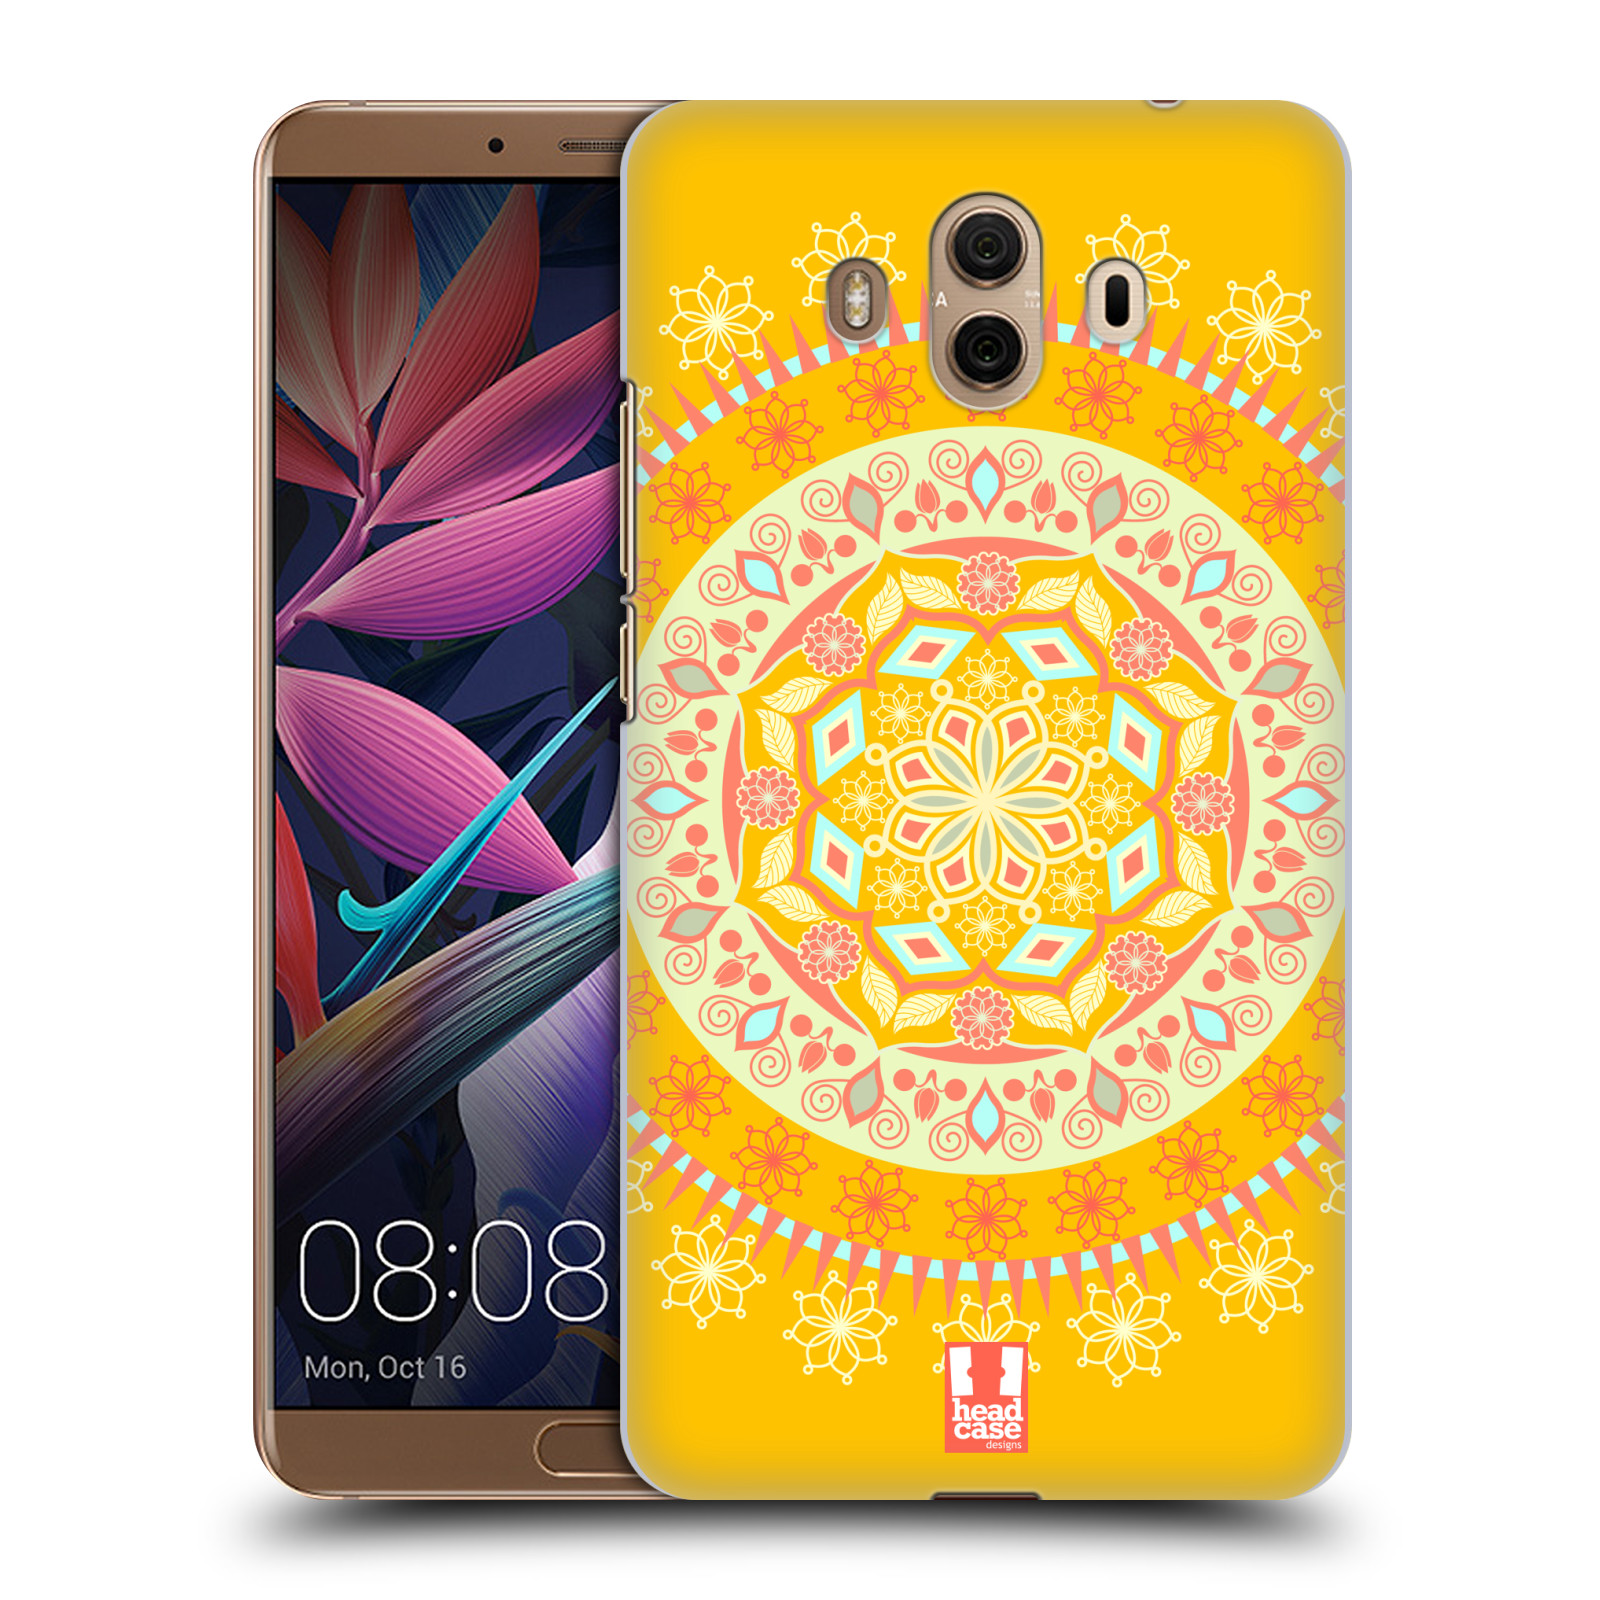 HEAD CASE plastový obal na mobil Huawei Mate 10 vzor Indie Mandala slunce barevný motiv ŽLUTÁ